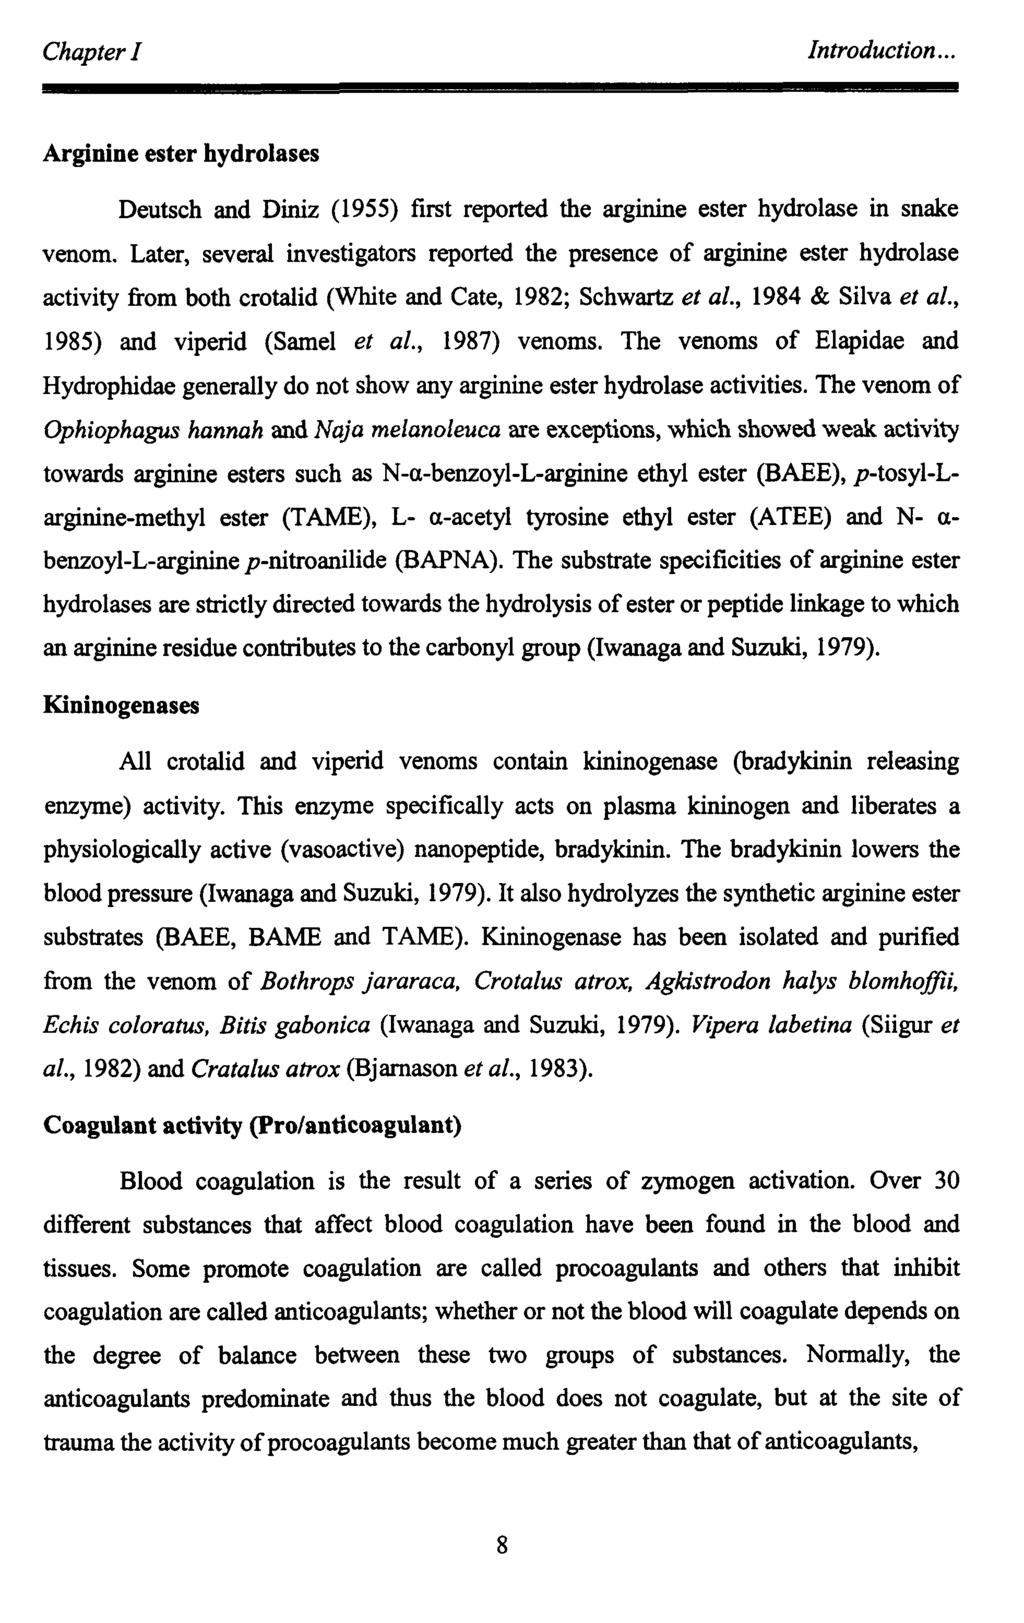 Arginine ester hydrolases Deutsch and Diniz (1955) first reported the arginine ester hydrolase in snake venom.